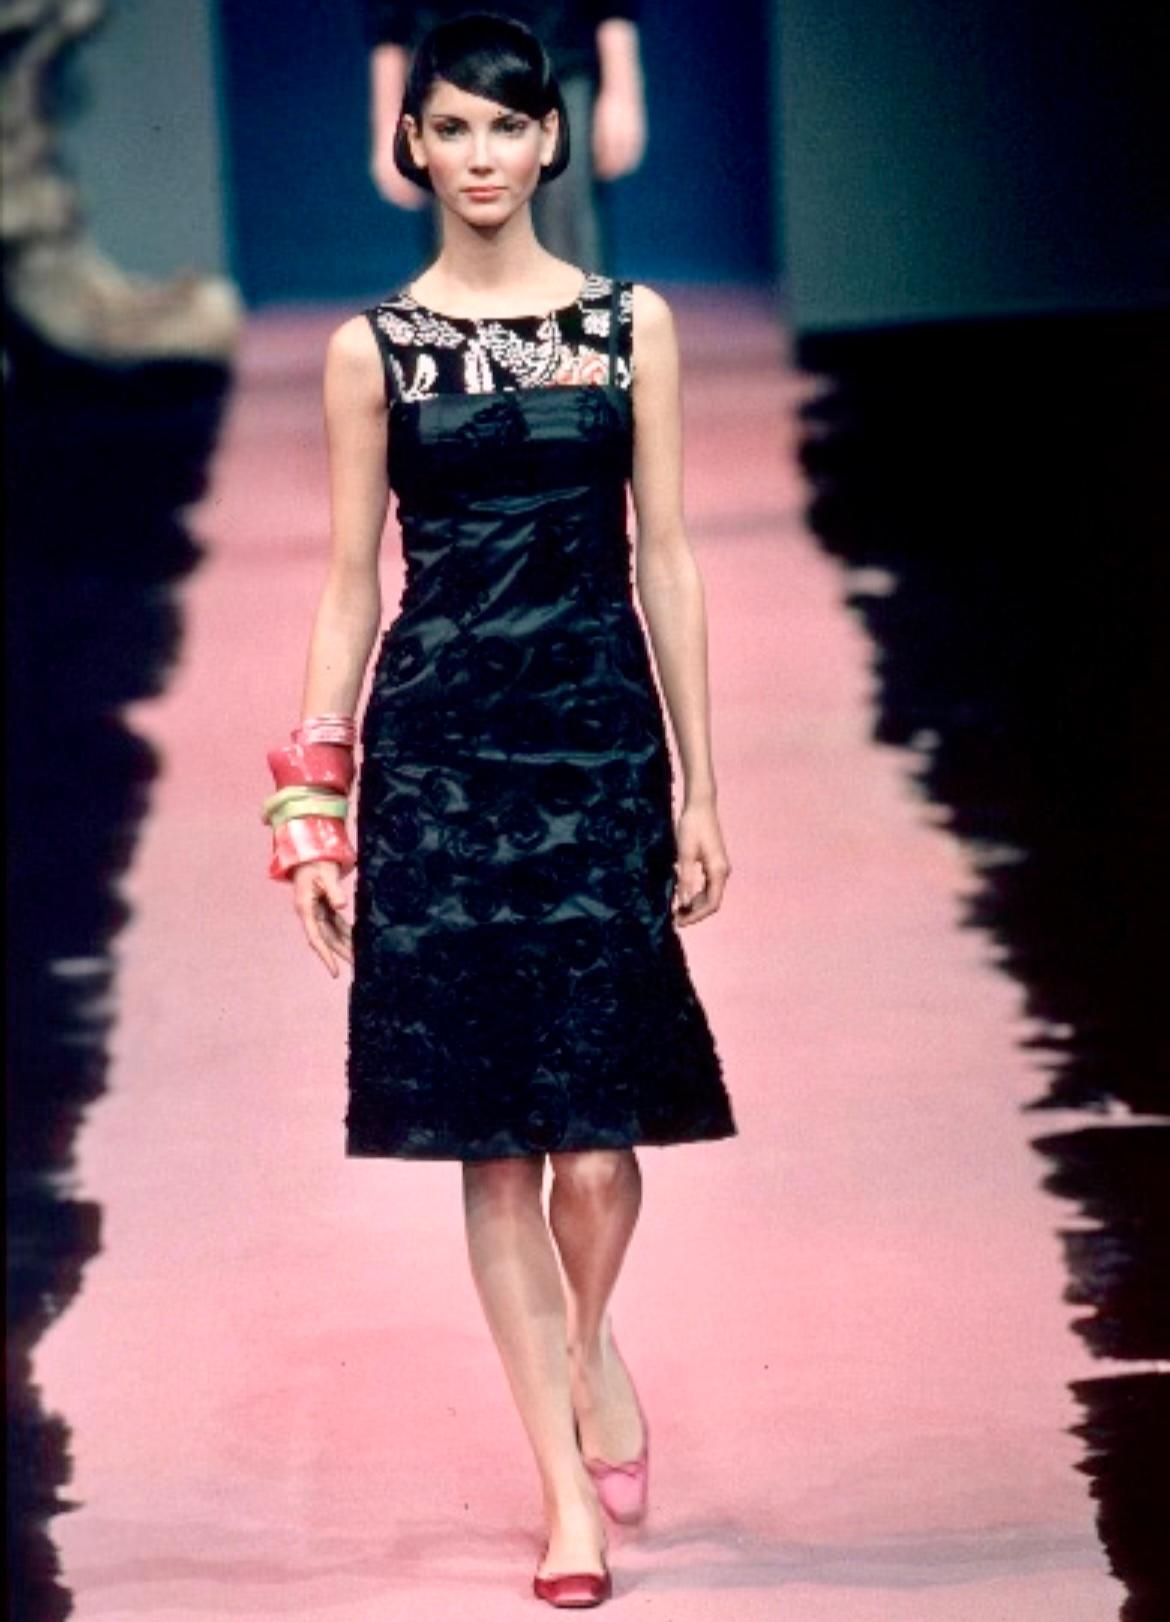 Dieses wunderschöne schwarze, trägerlose Kleid wurde für die Frühjahr/Sommer-Kollektion 1999 von Christian Lacroix entworfen, und ähnliche Stücke wurden auf dem Laufsteg der Saison gezeigt. Dieses bodenlange Kleid im klassischen Stil besticht durch